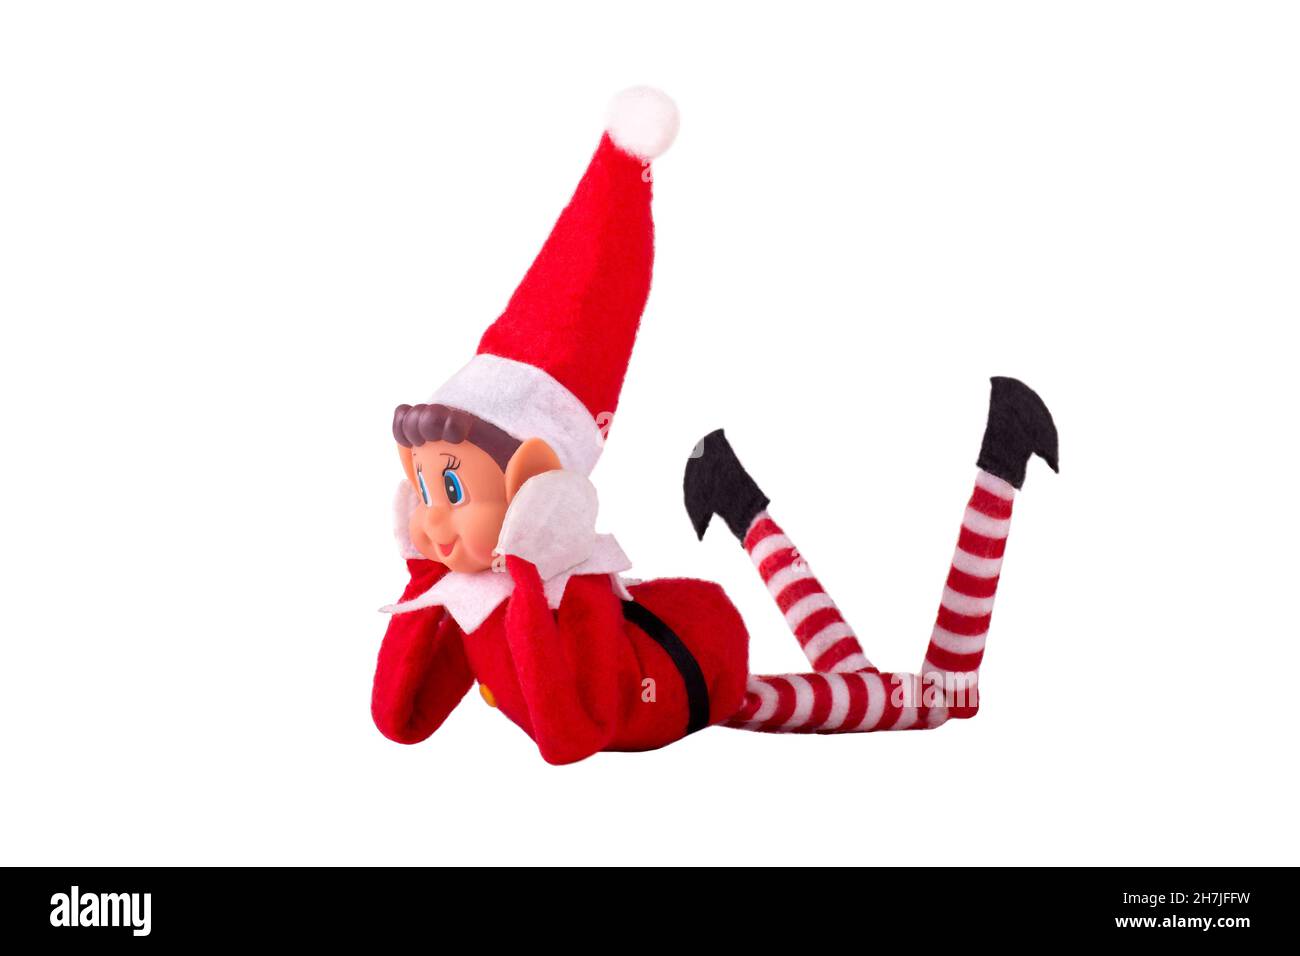 Giocattolo Elf di Natale su sfondo bianco isolato con spazio per la copia. Lo spirito di Natale, la tradizione di Natale. Foto Stock